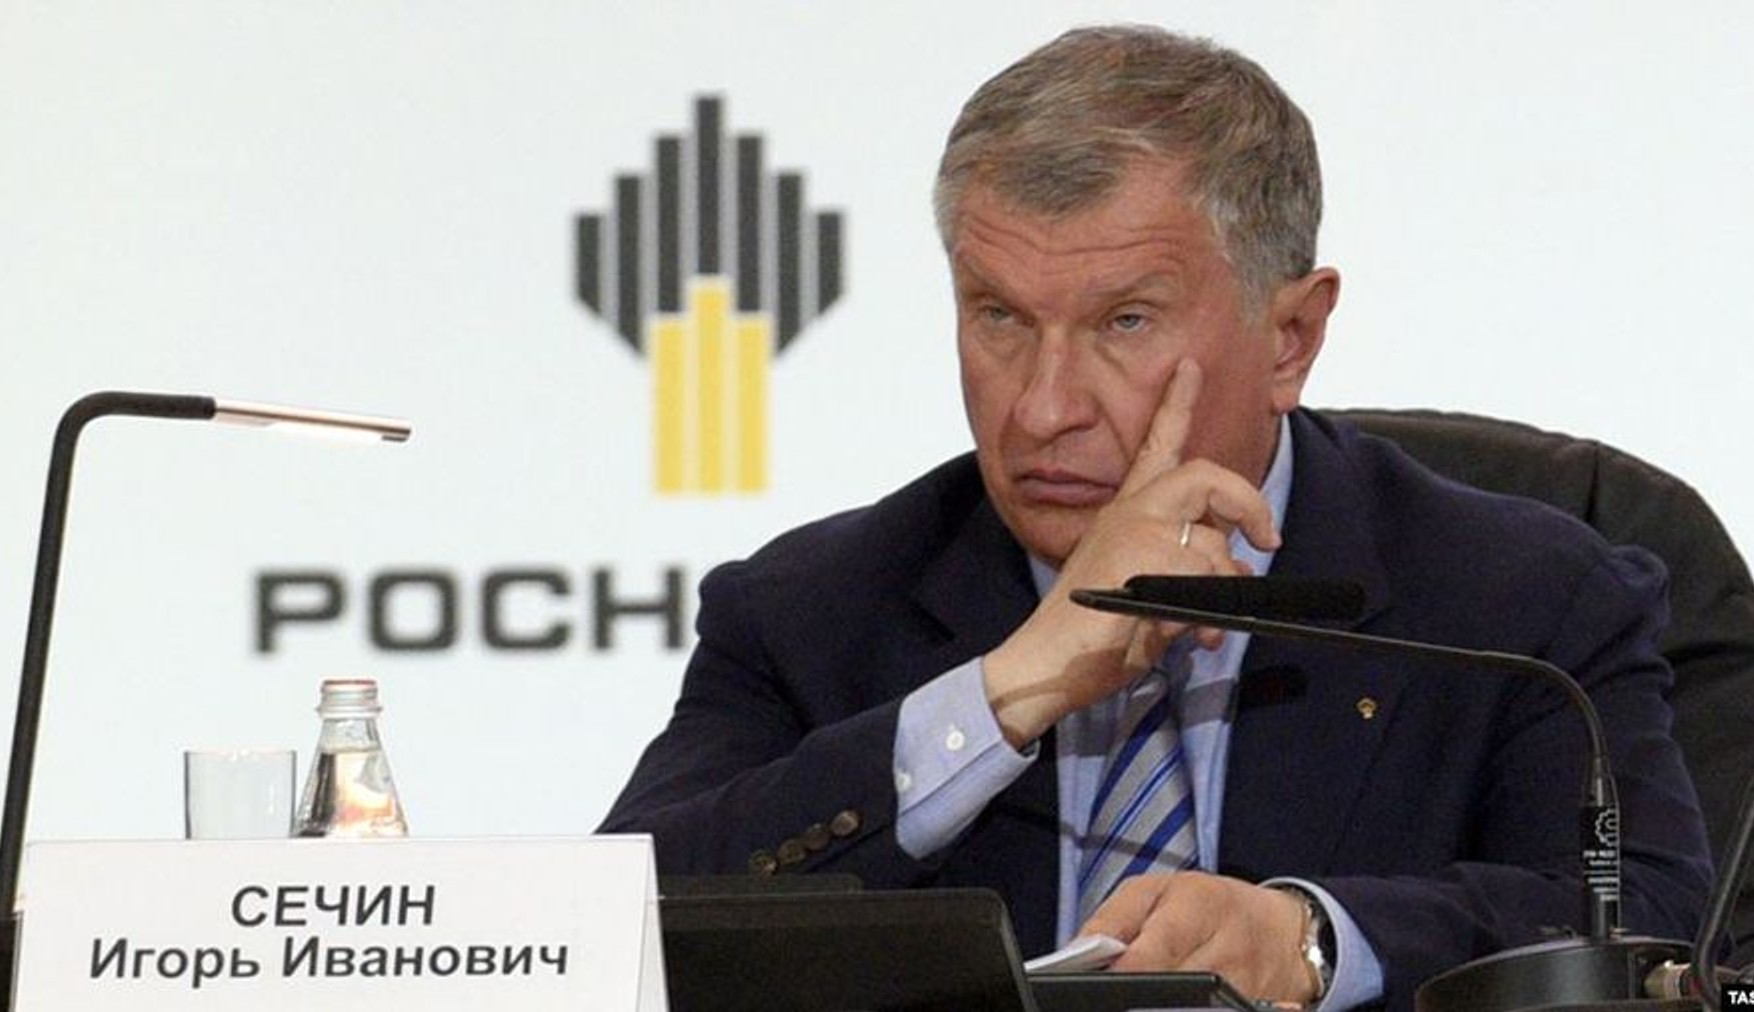 Суд зобов'язав «Собеседник» спростувати матеріал про «дачу Путіна» за позовом «Роснефти», яка вимагала 500 млн рублів